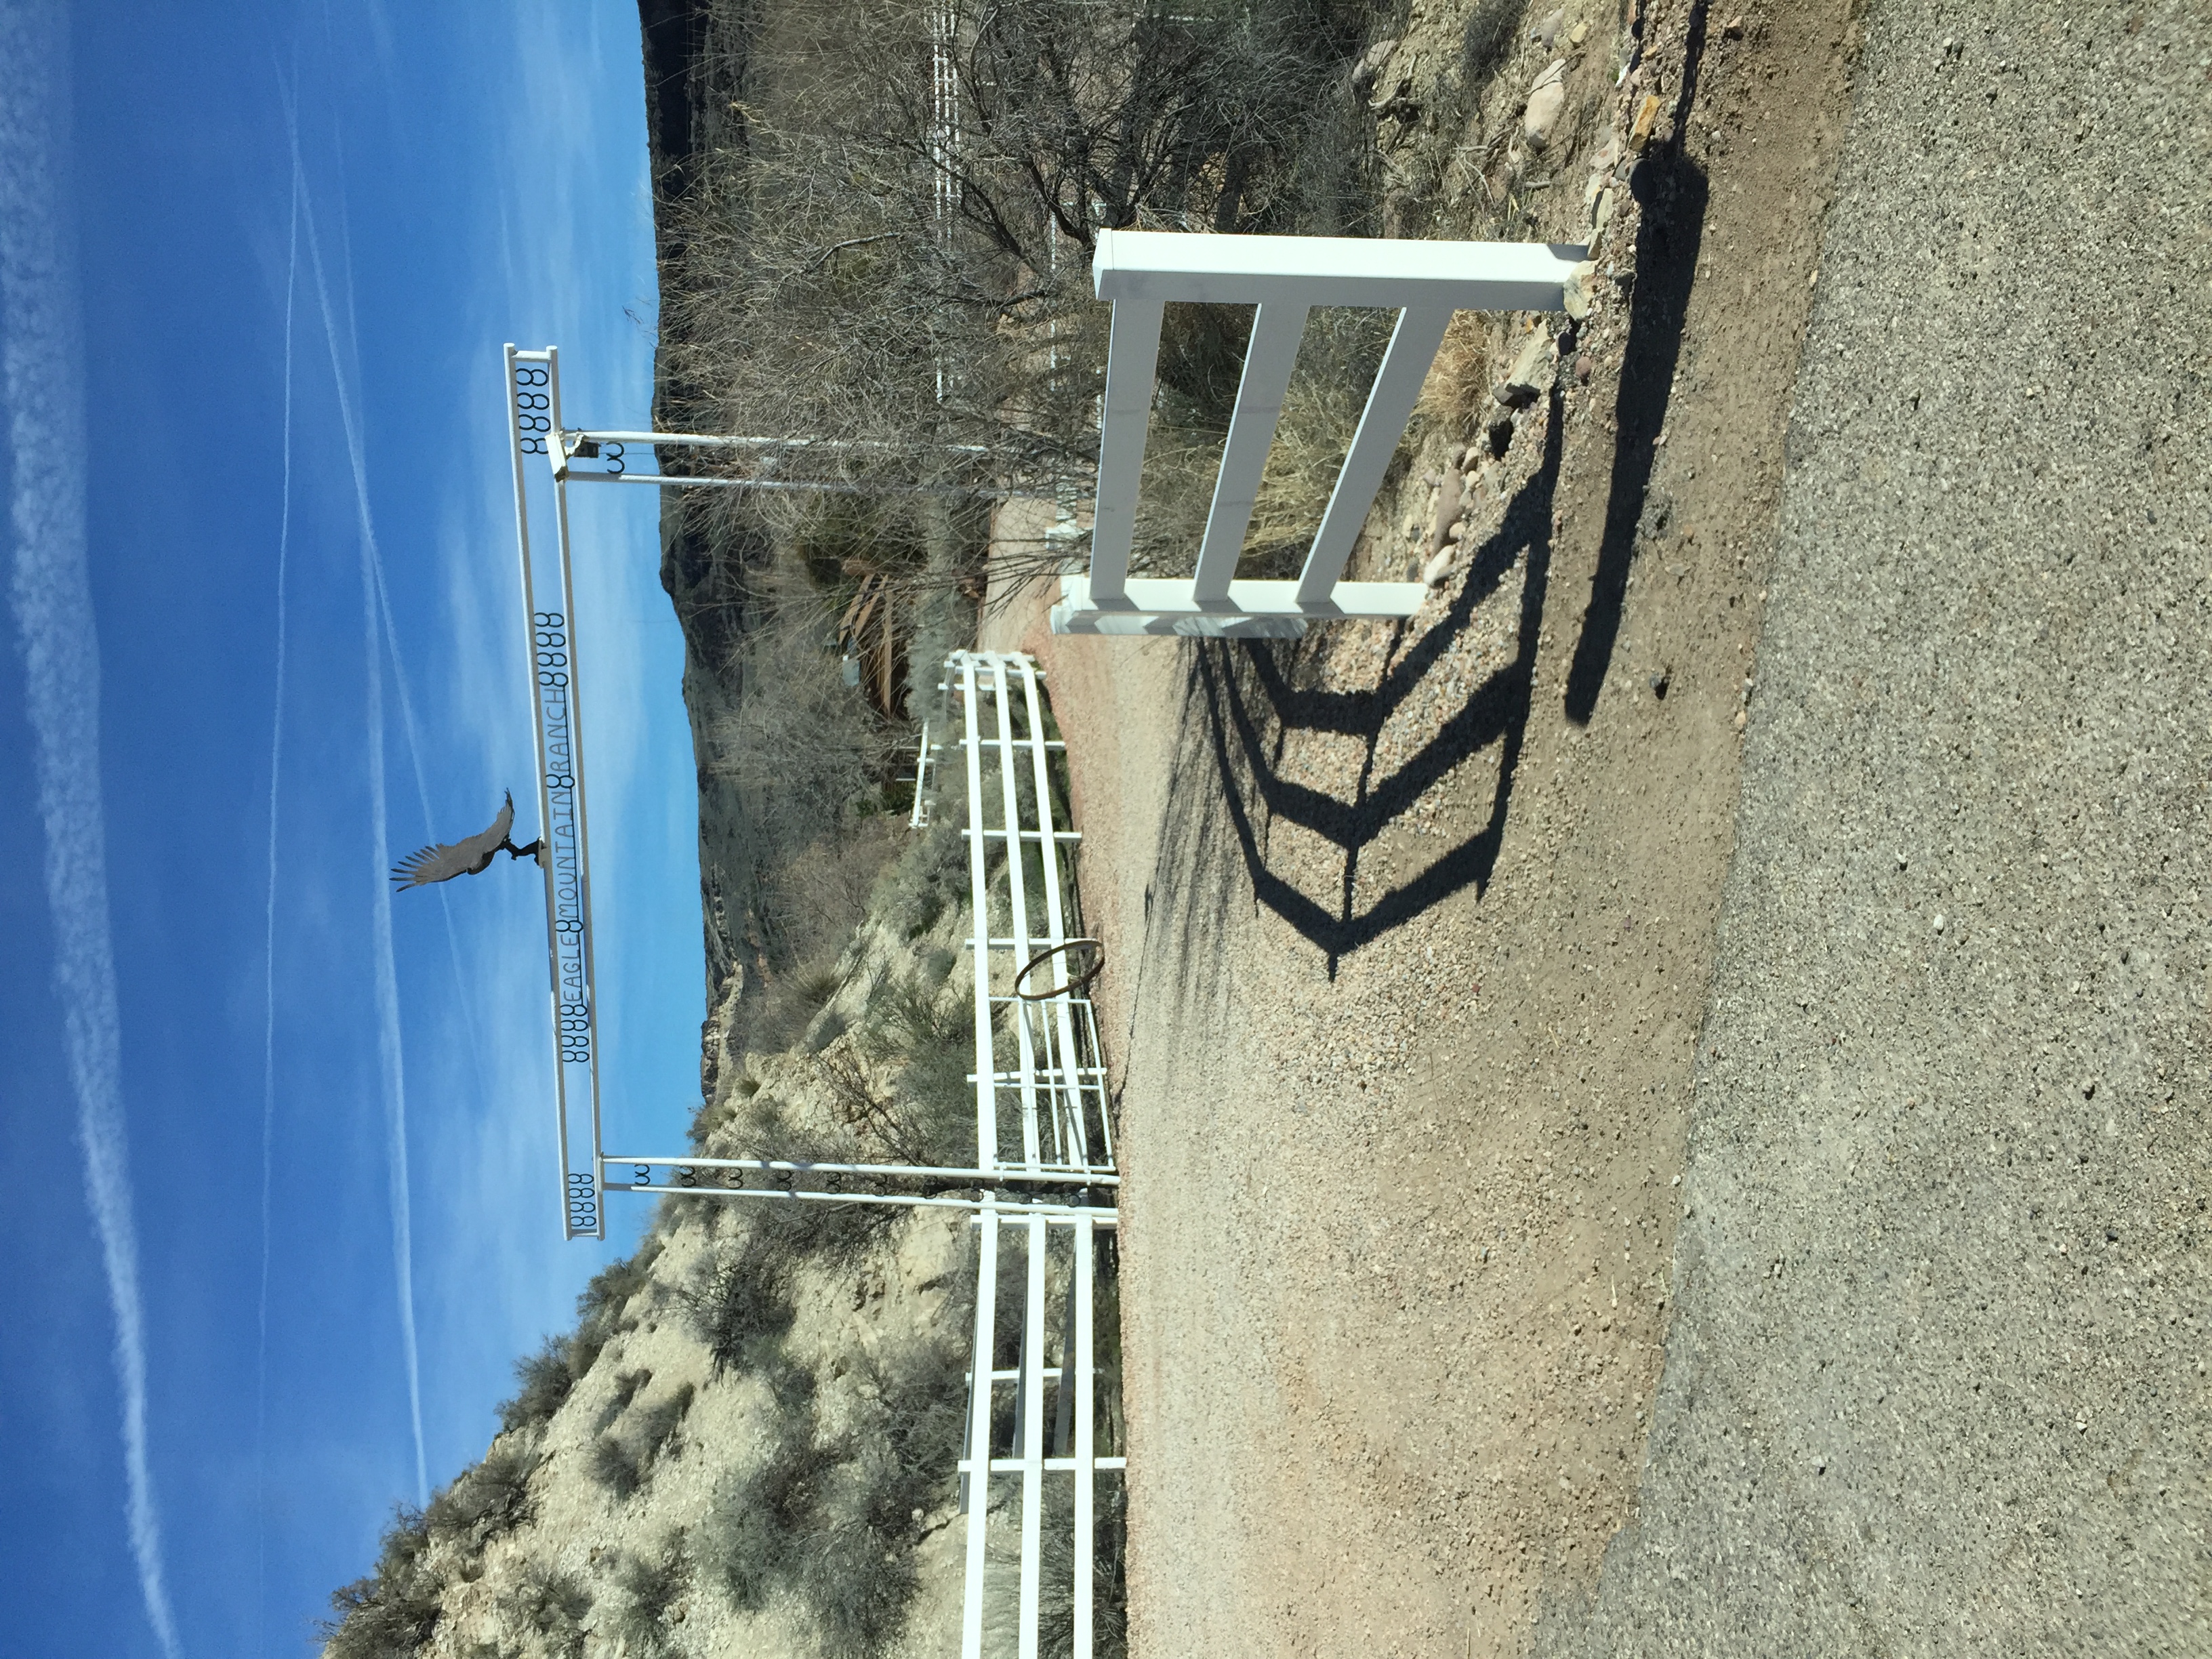 Entrance to the Eagle Mountain Ranch